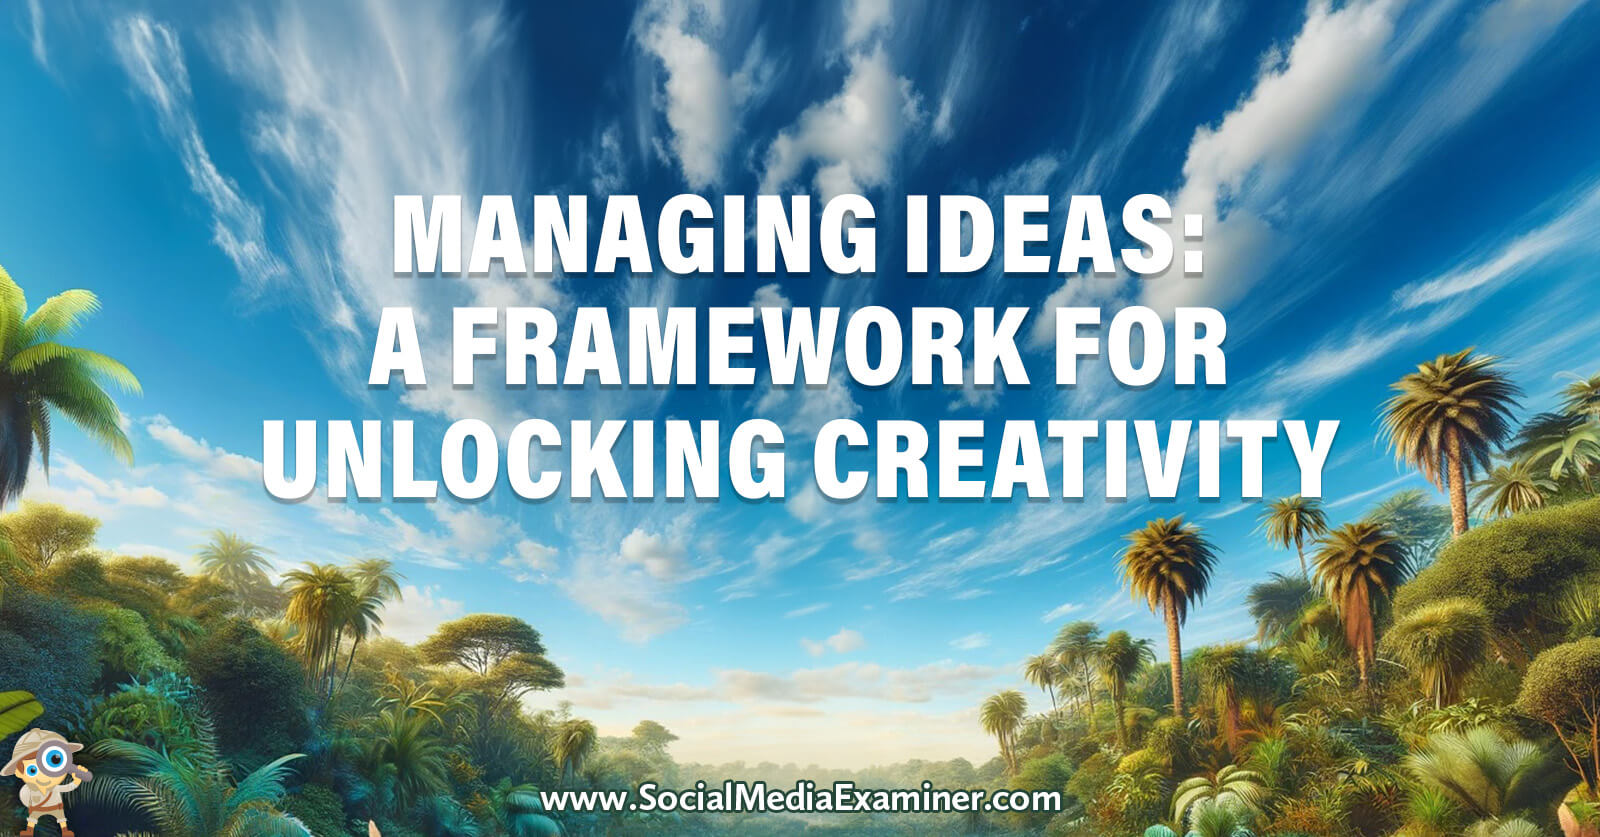 Managing Ideas: A Framework for Unlocking Creativity by Social Media Examiner